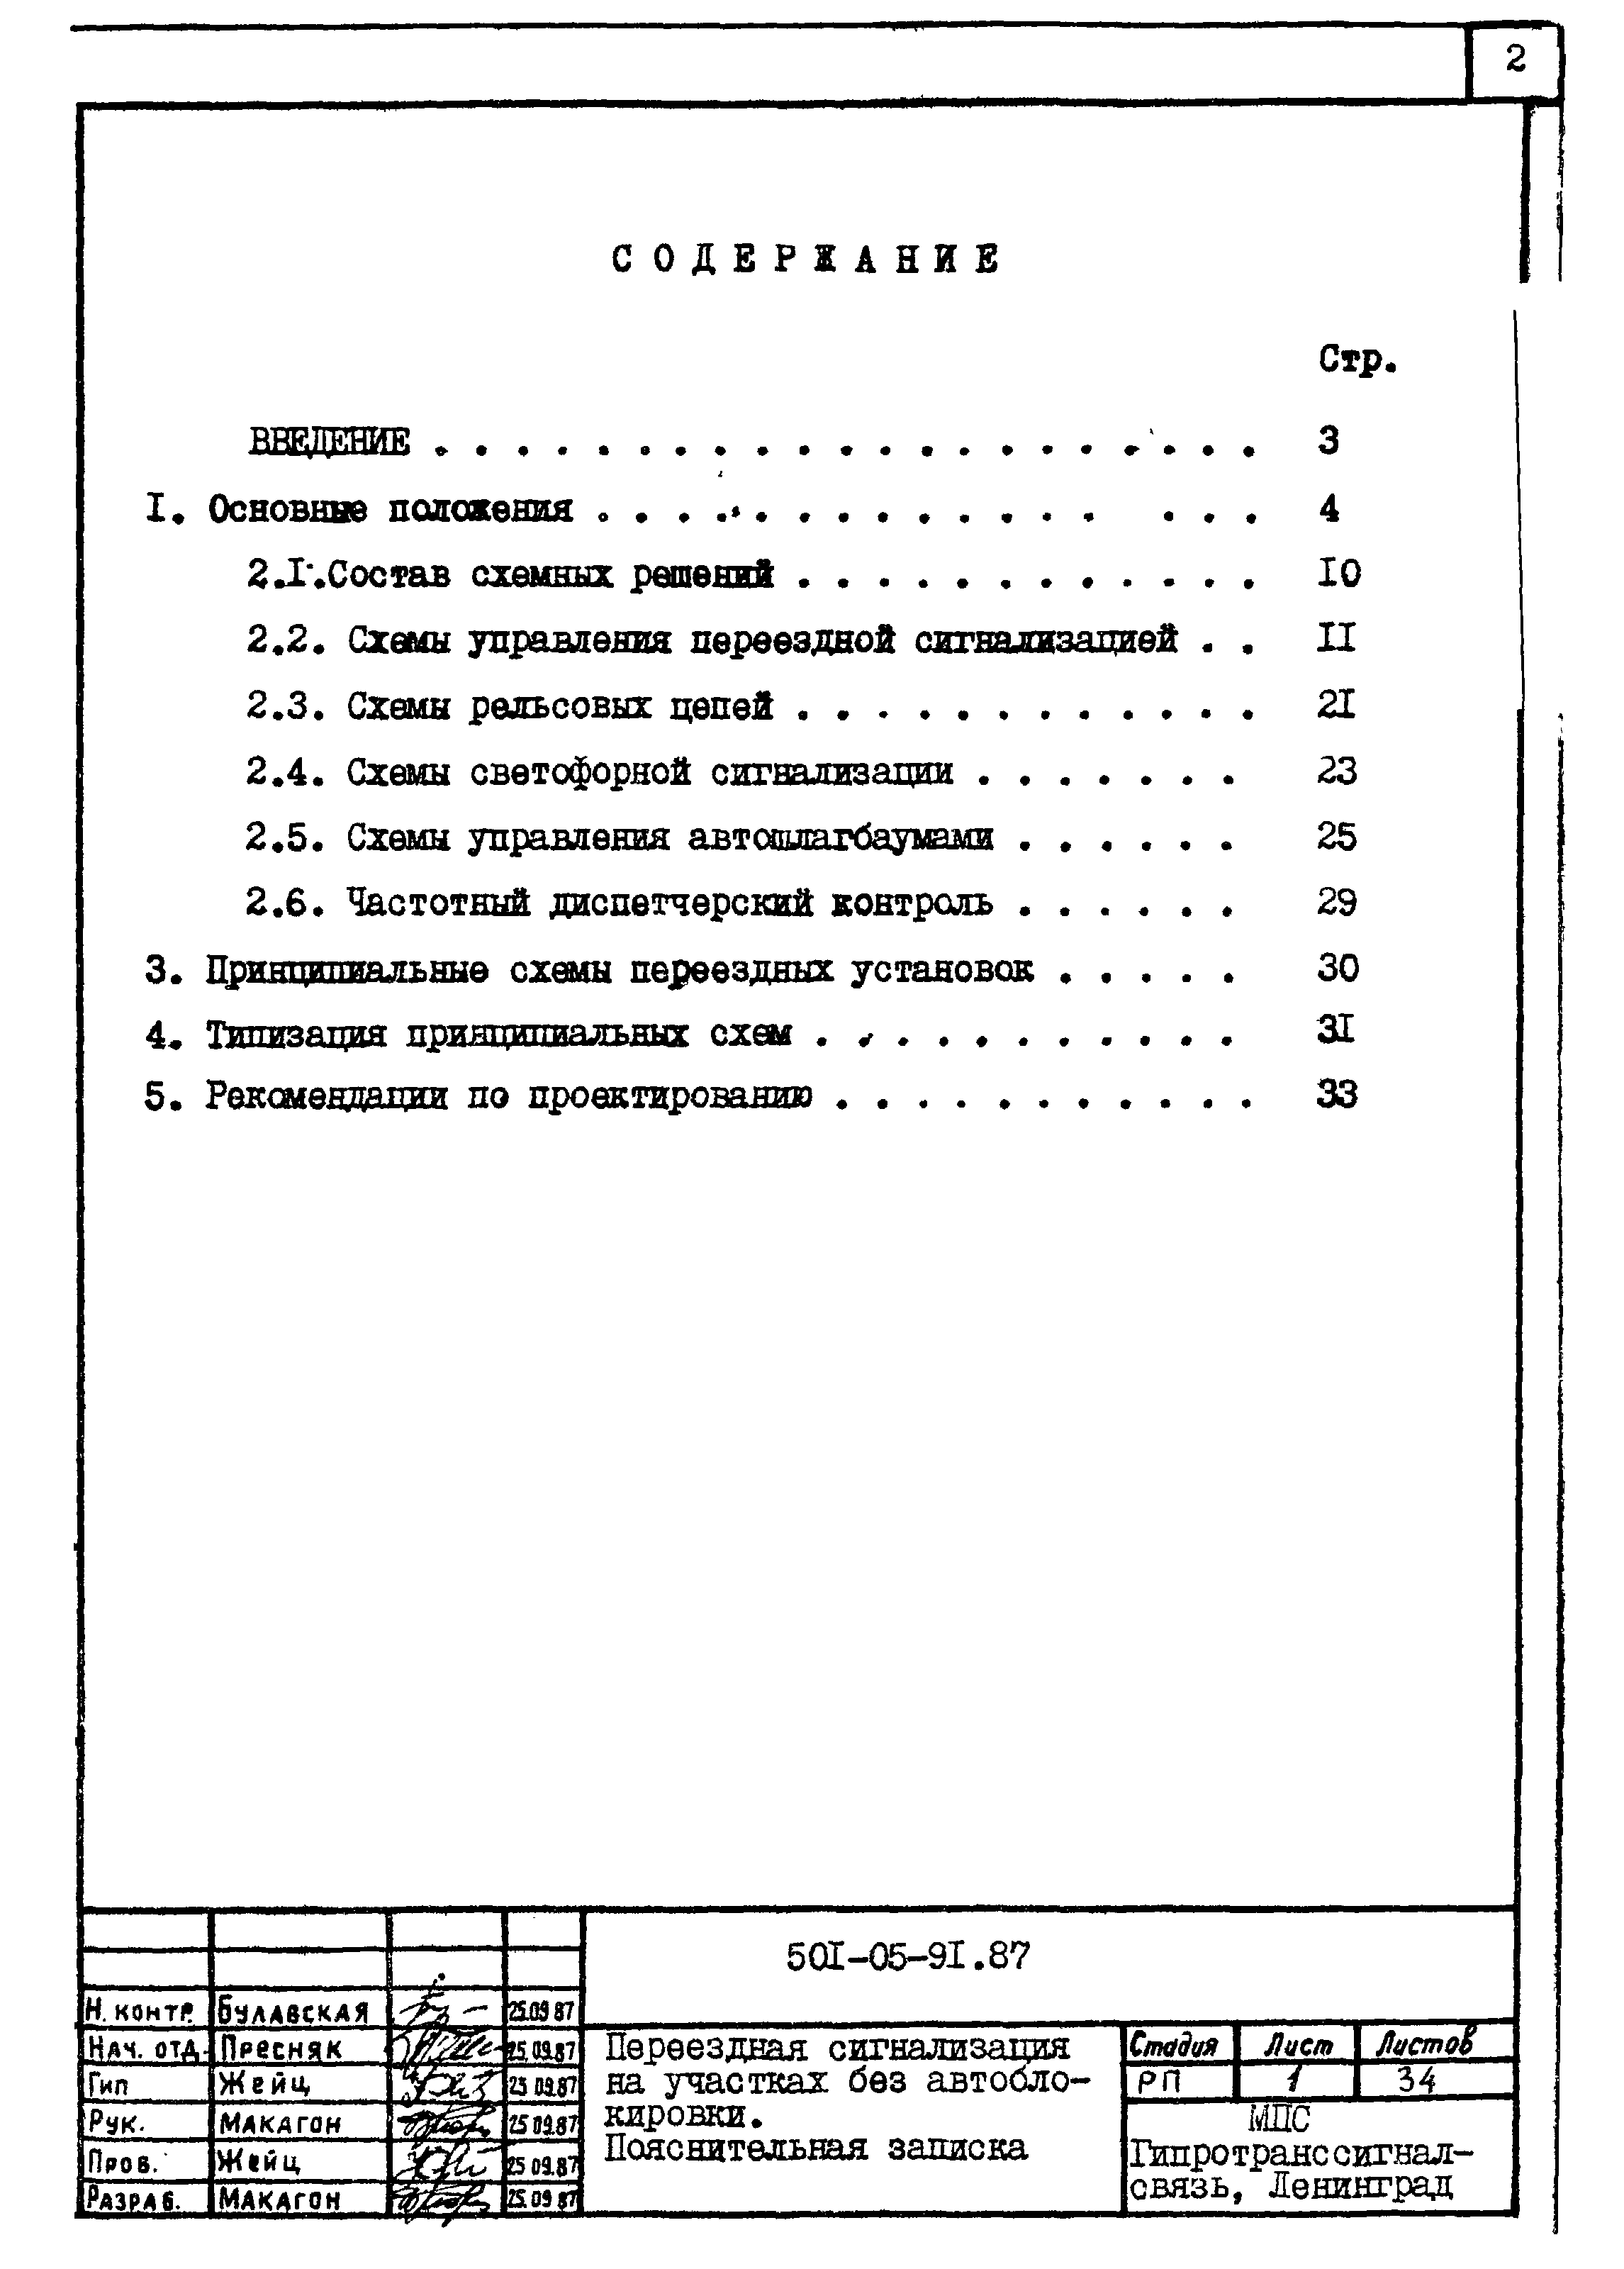 Типовые материалы для проектирования 501-05-91.87